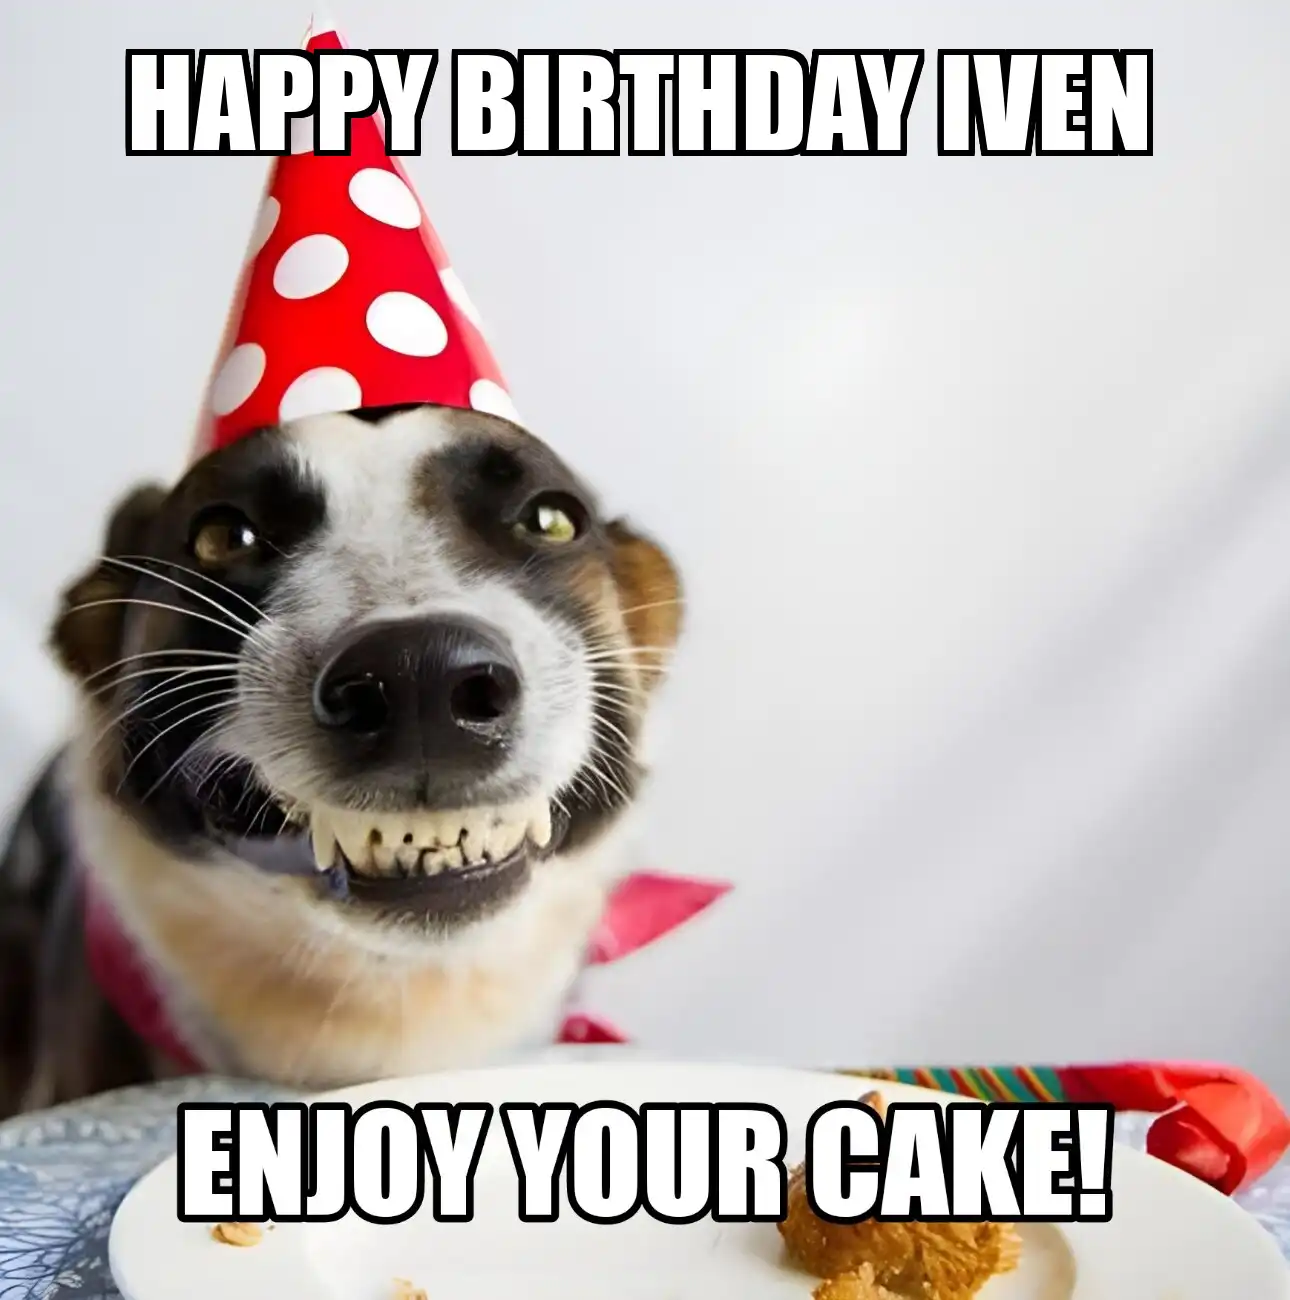 Happy Birthday Iven Enjoy Your Cake Dog Meme